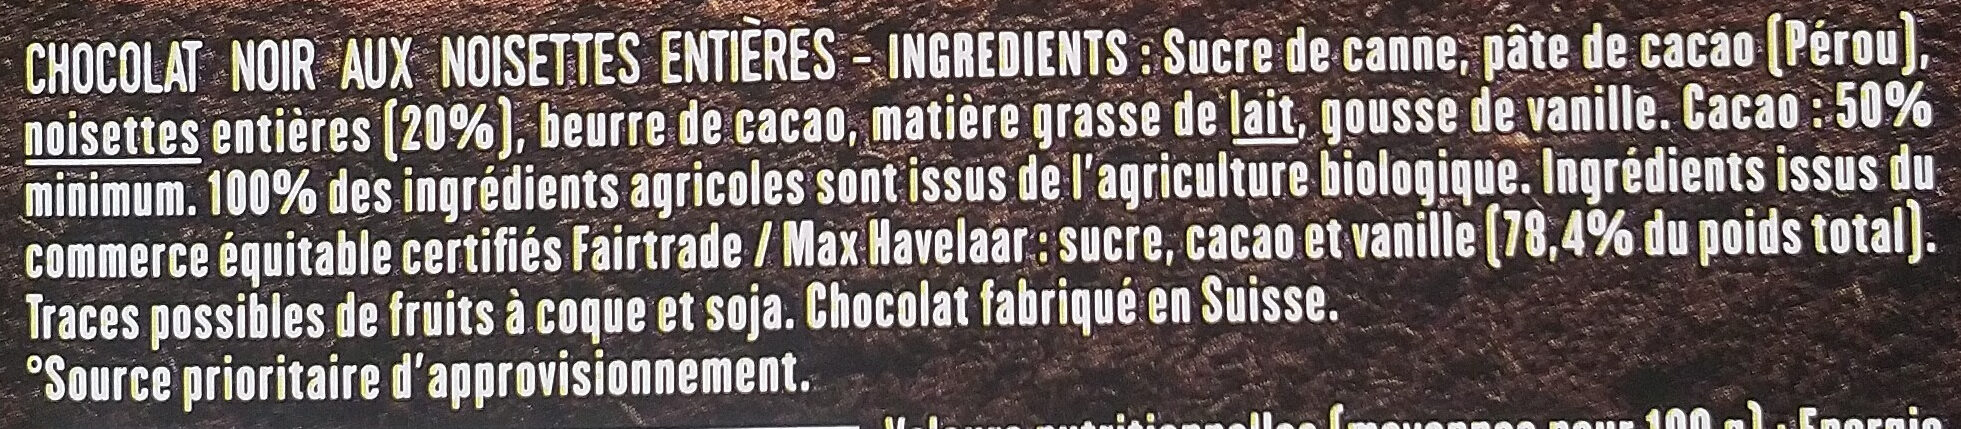 Noir et noisettes entières - Ingredients - fr